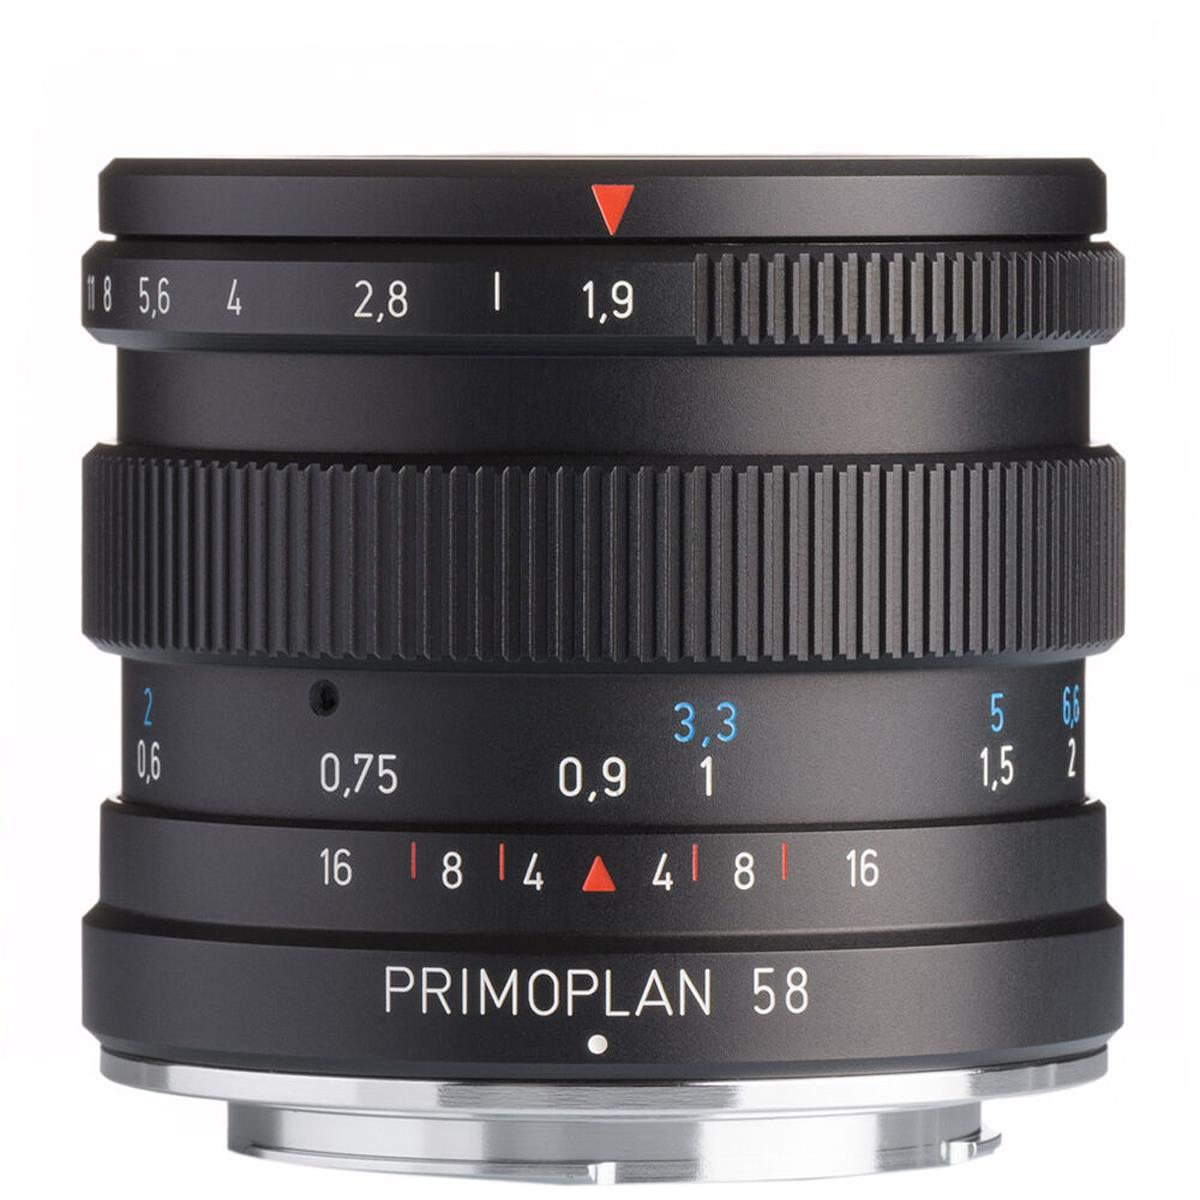 Meyer-Optik Gorlitz Primoplan 58 f1.9 II Lens for Leica M